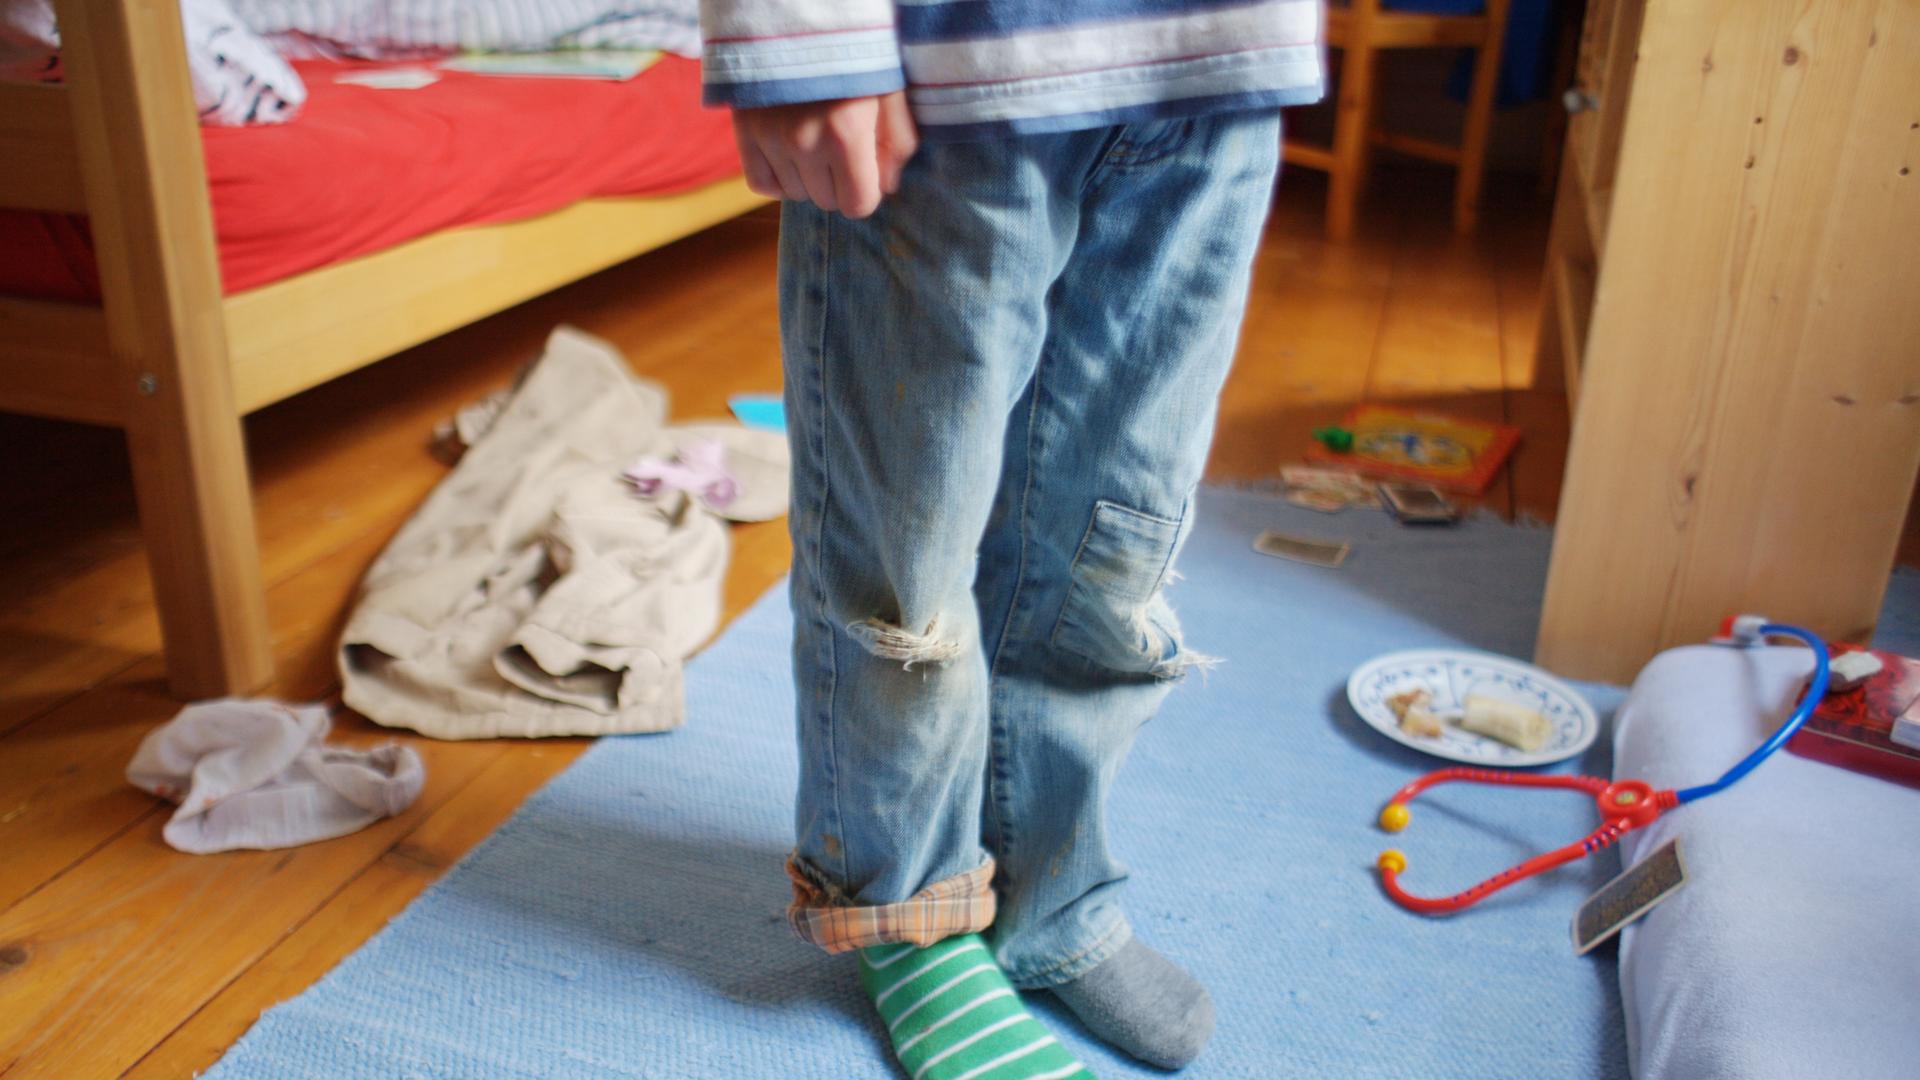 Ein Kind steht mit schmutziger Kleidung, zerrissenen Hosen und verschiedenen Strümpfen in einem unaufgräumten Zimmer.